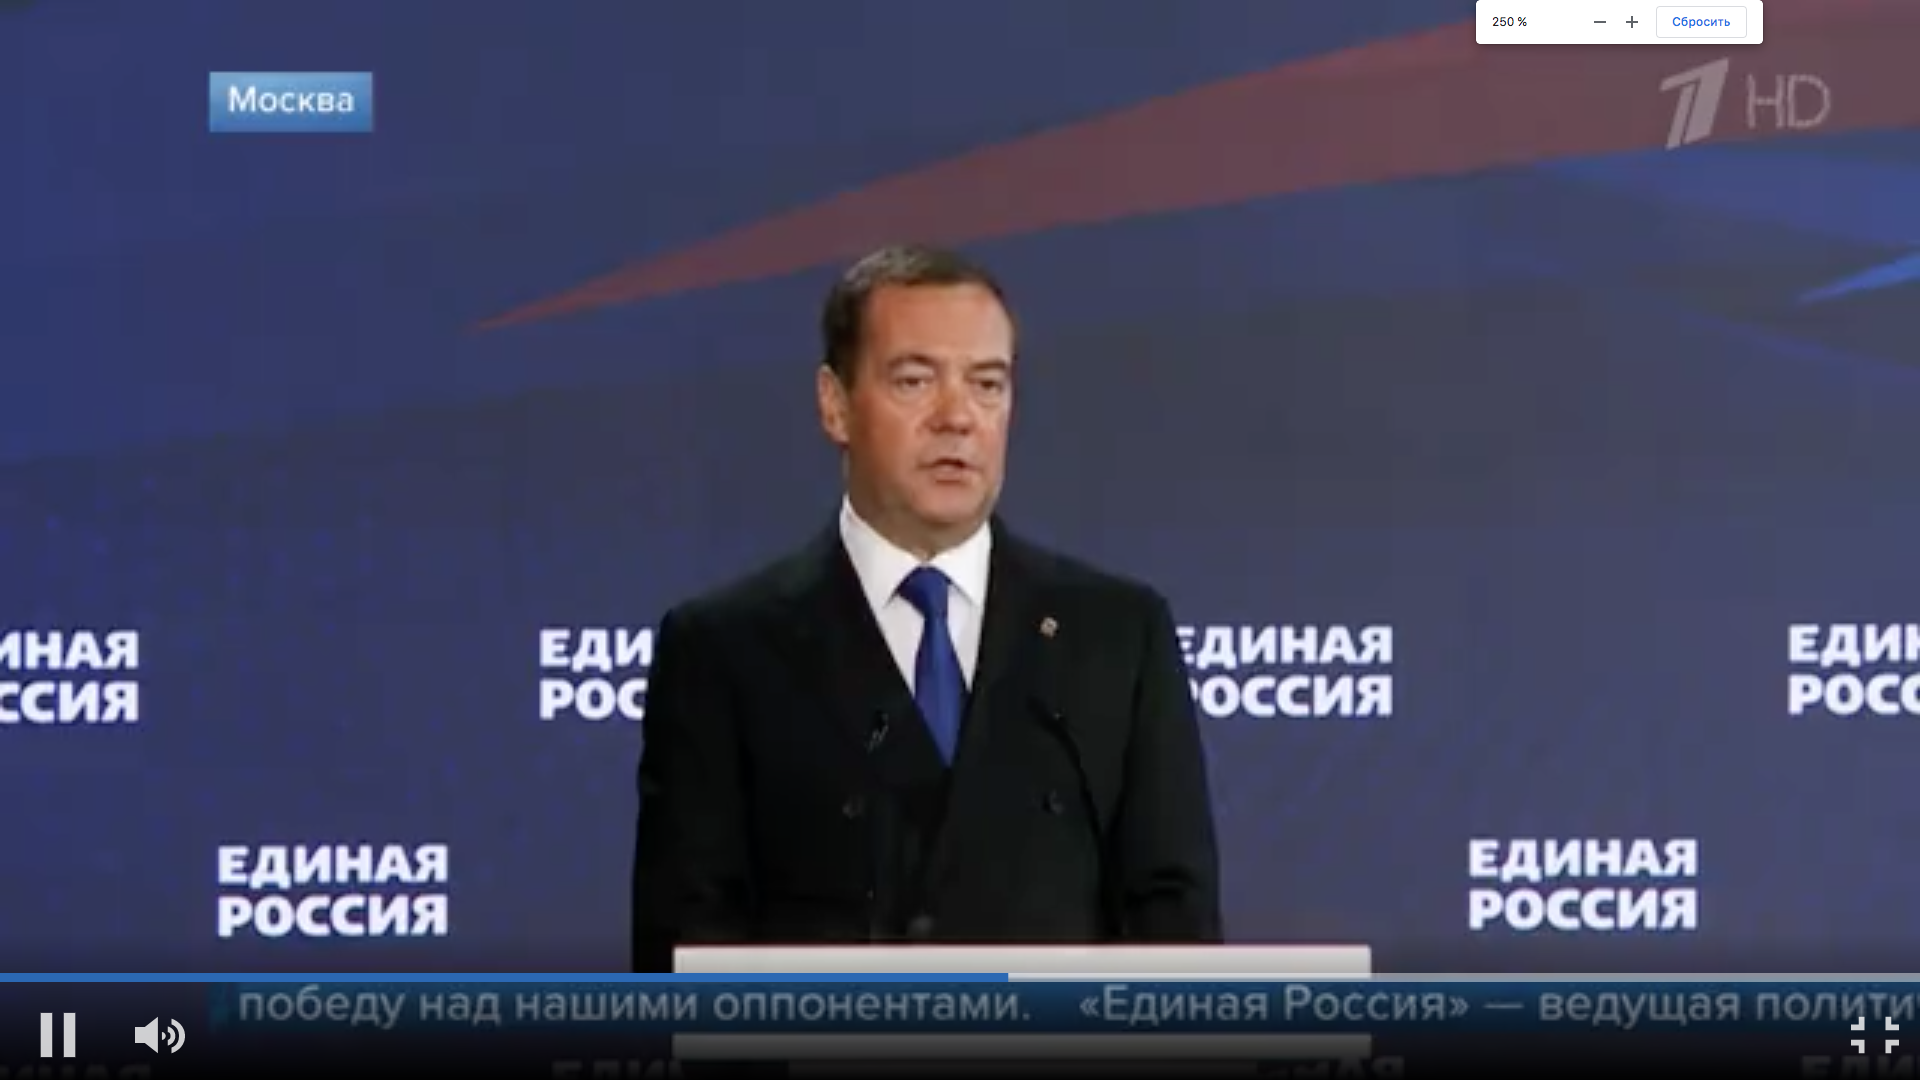 Дмитрий Медведев: "Программа «Единой России» оставалась актуальной все пять лет"